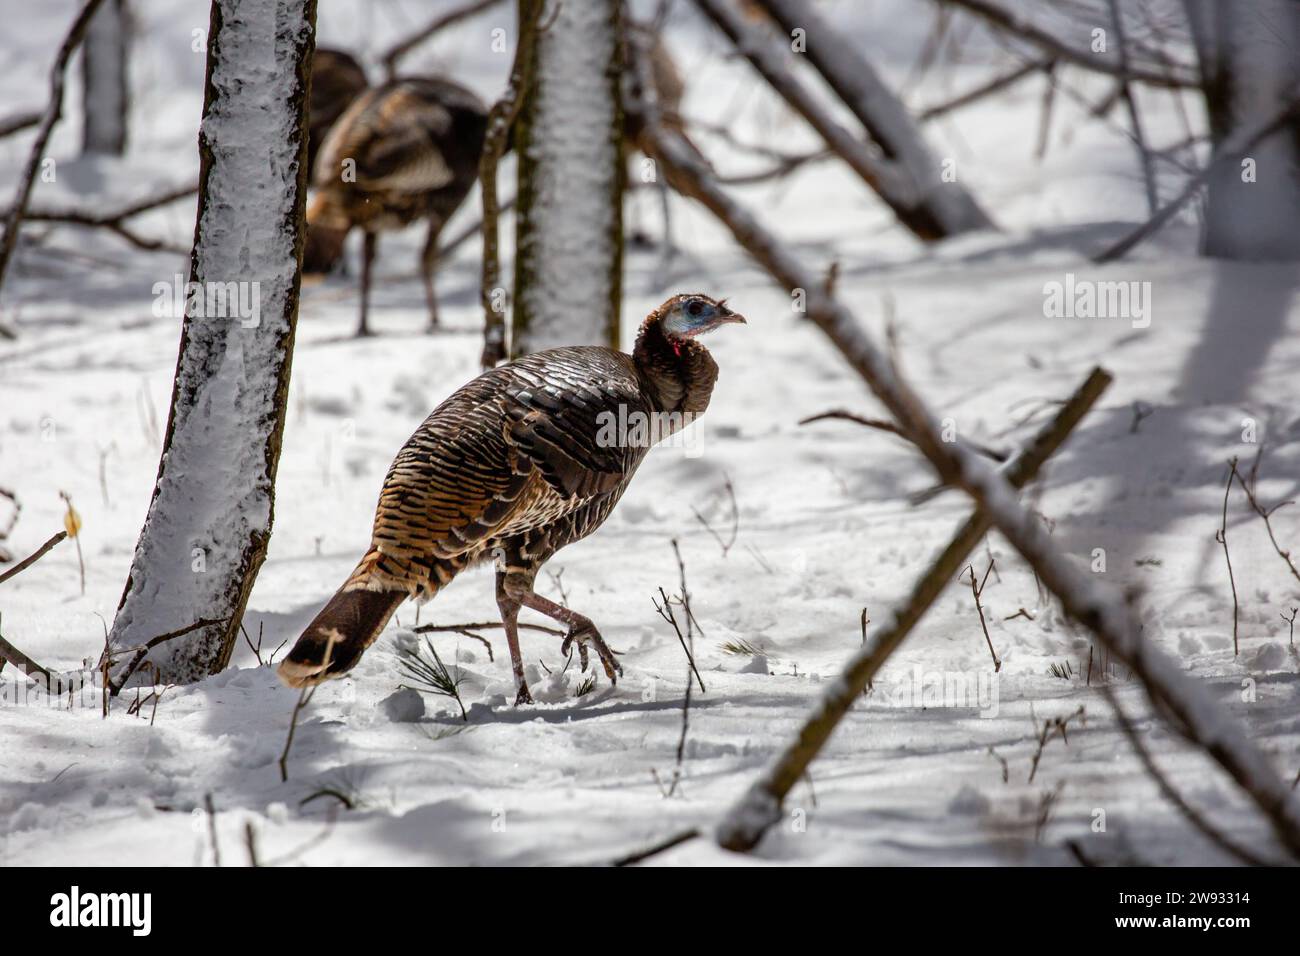 Wild eastern turkey female (Meleagris gallopavo) walking through snow in Wisconsin, horizontal Stock Photo